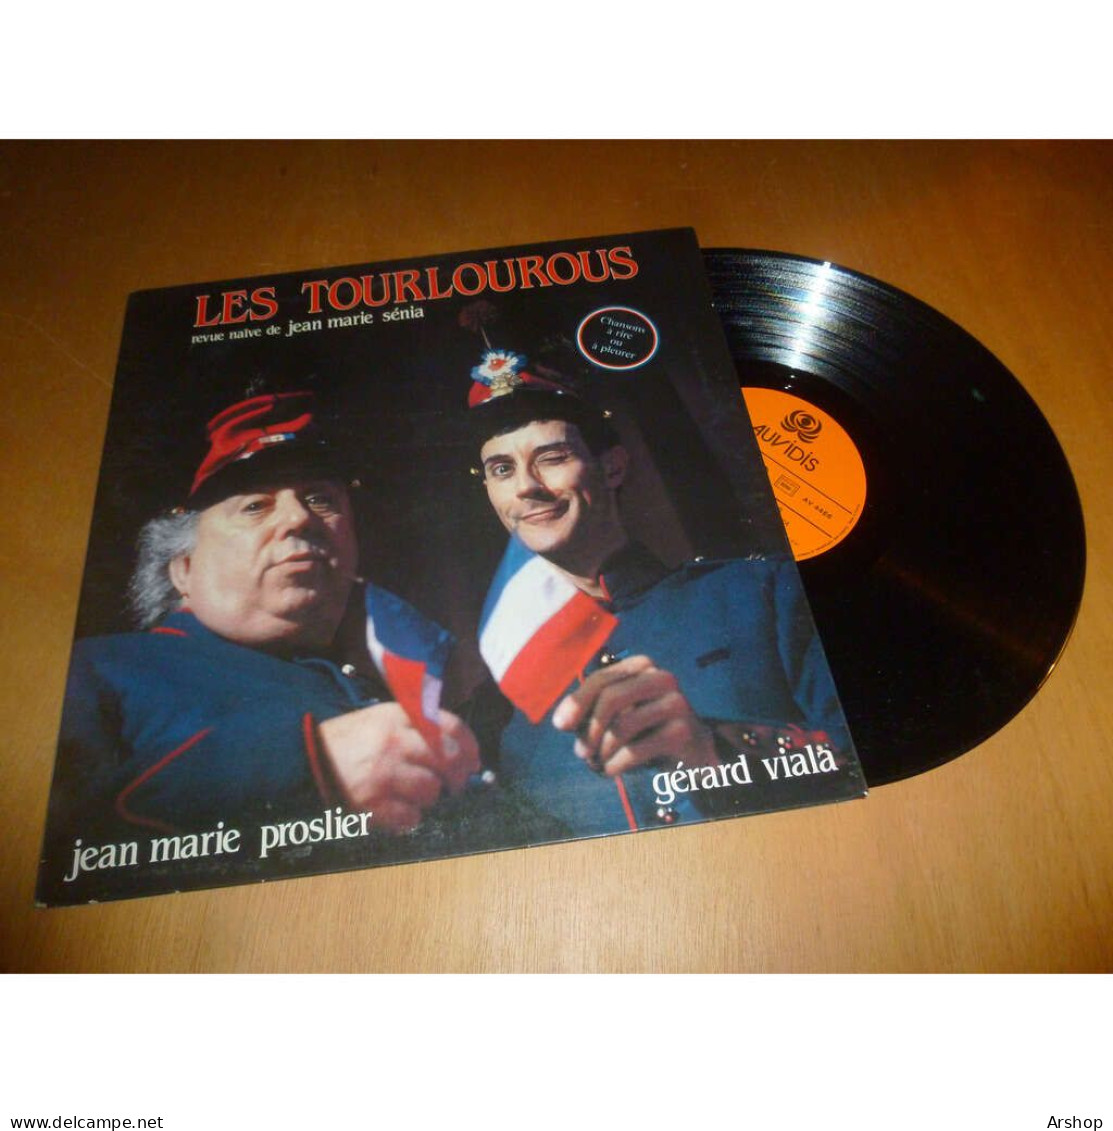 JEAN MARIE PROSLIER & GERARD VIALA Les Trourlourous - Revue Naïve De Jean Marie Senia AUVIDIS Lp 1985 - Otros - Canción Francesa